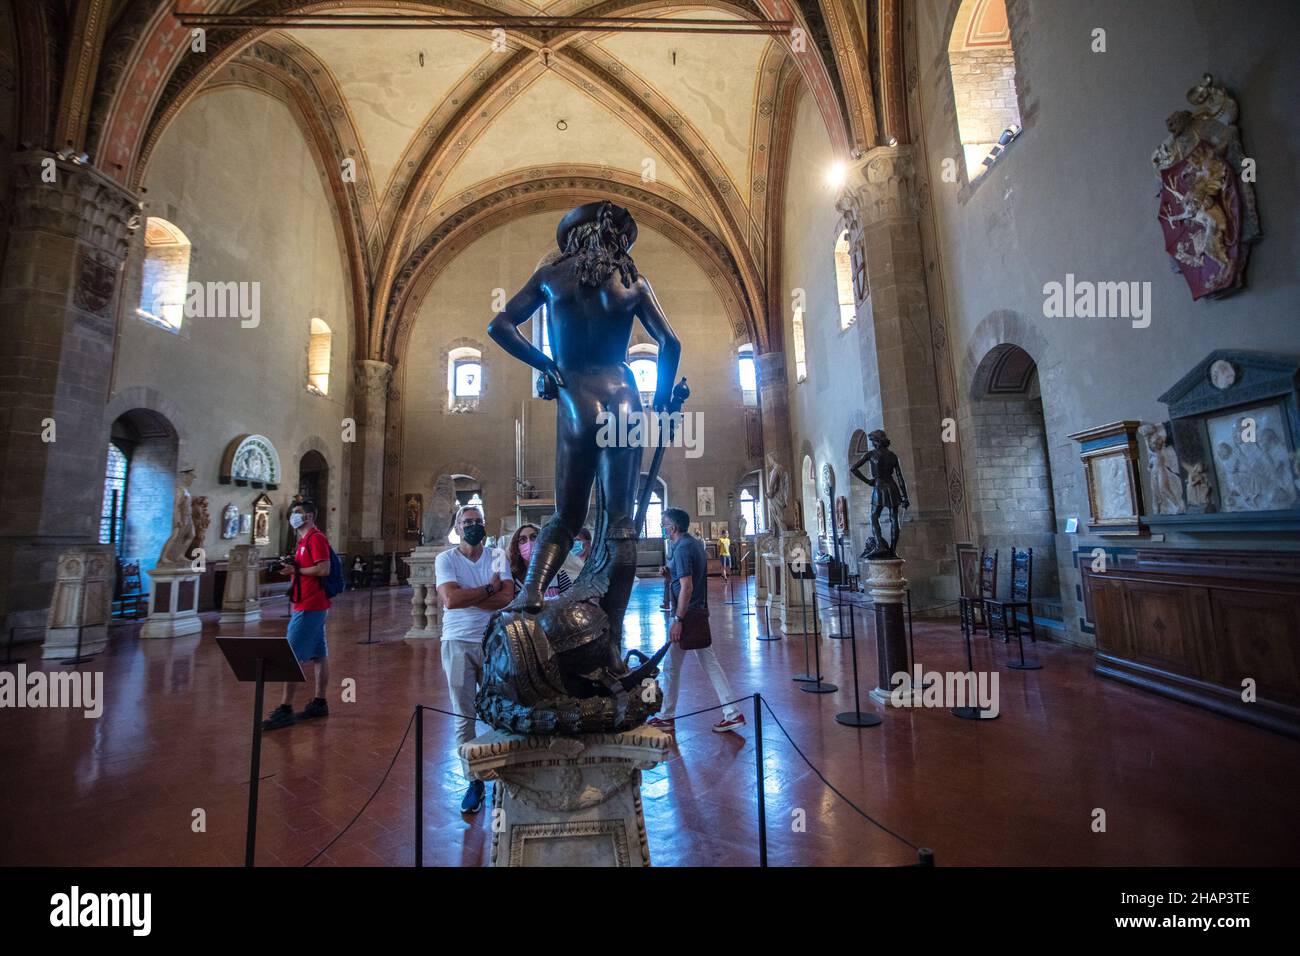 Das Bargello National Museum, auch bekannt als Palazzo del Bargello, ist ein Kunstmuseum in Florenz. Es beherbergt die Statue David von Donatello. Stockfoto